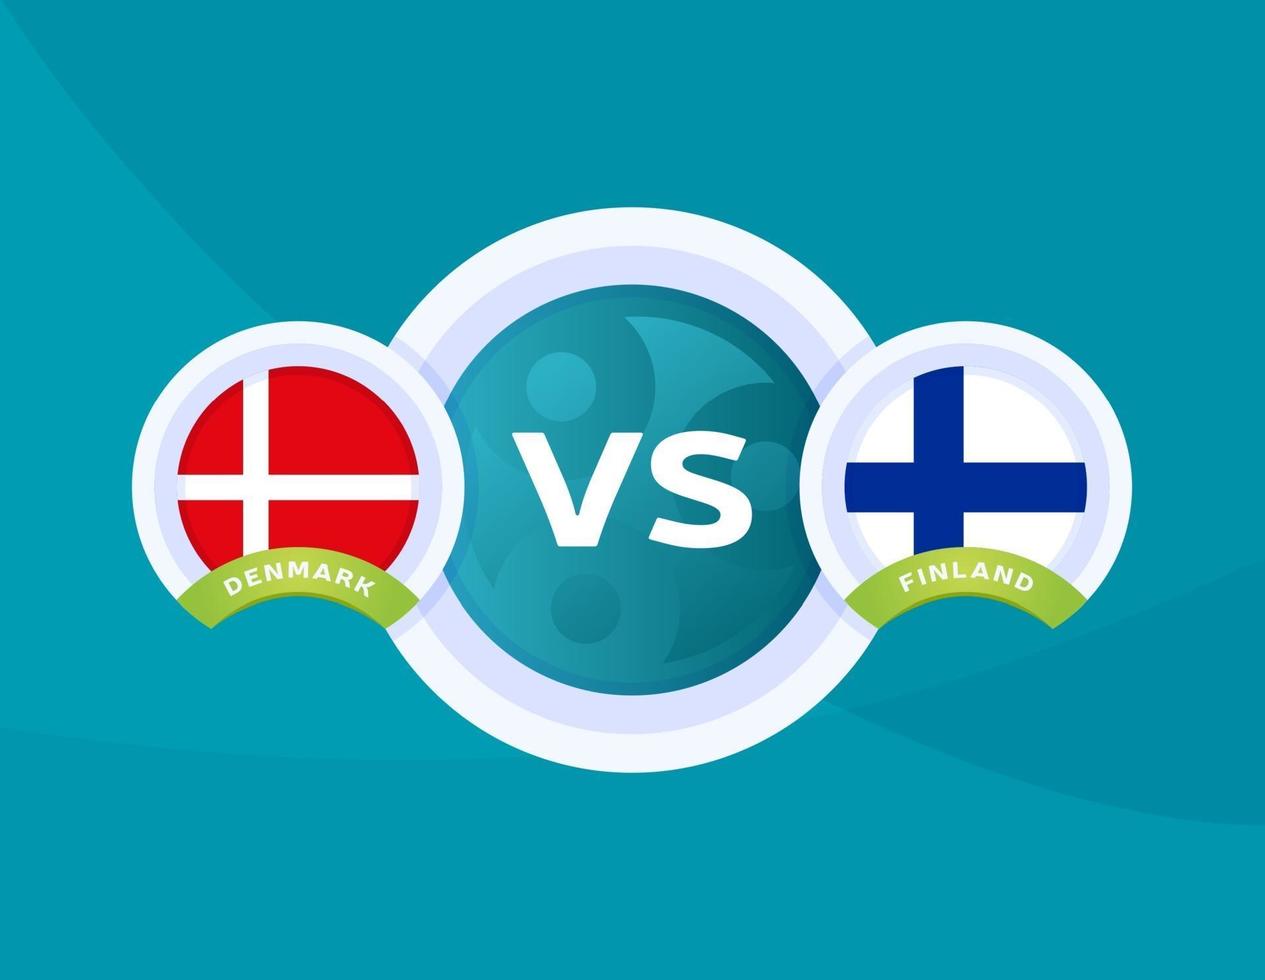 Denmark vs Finland football vector